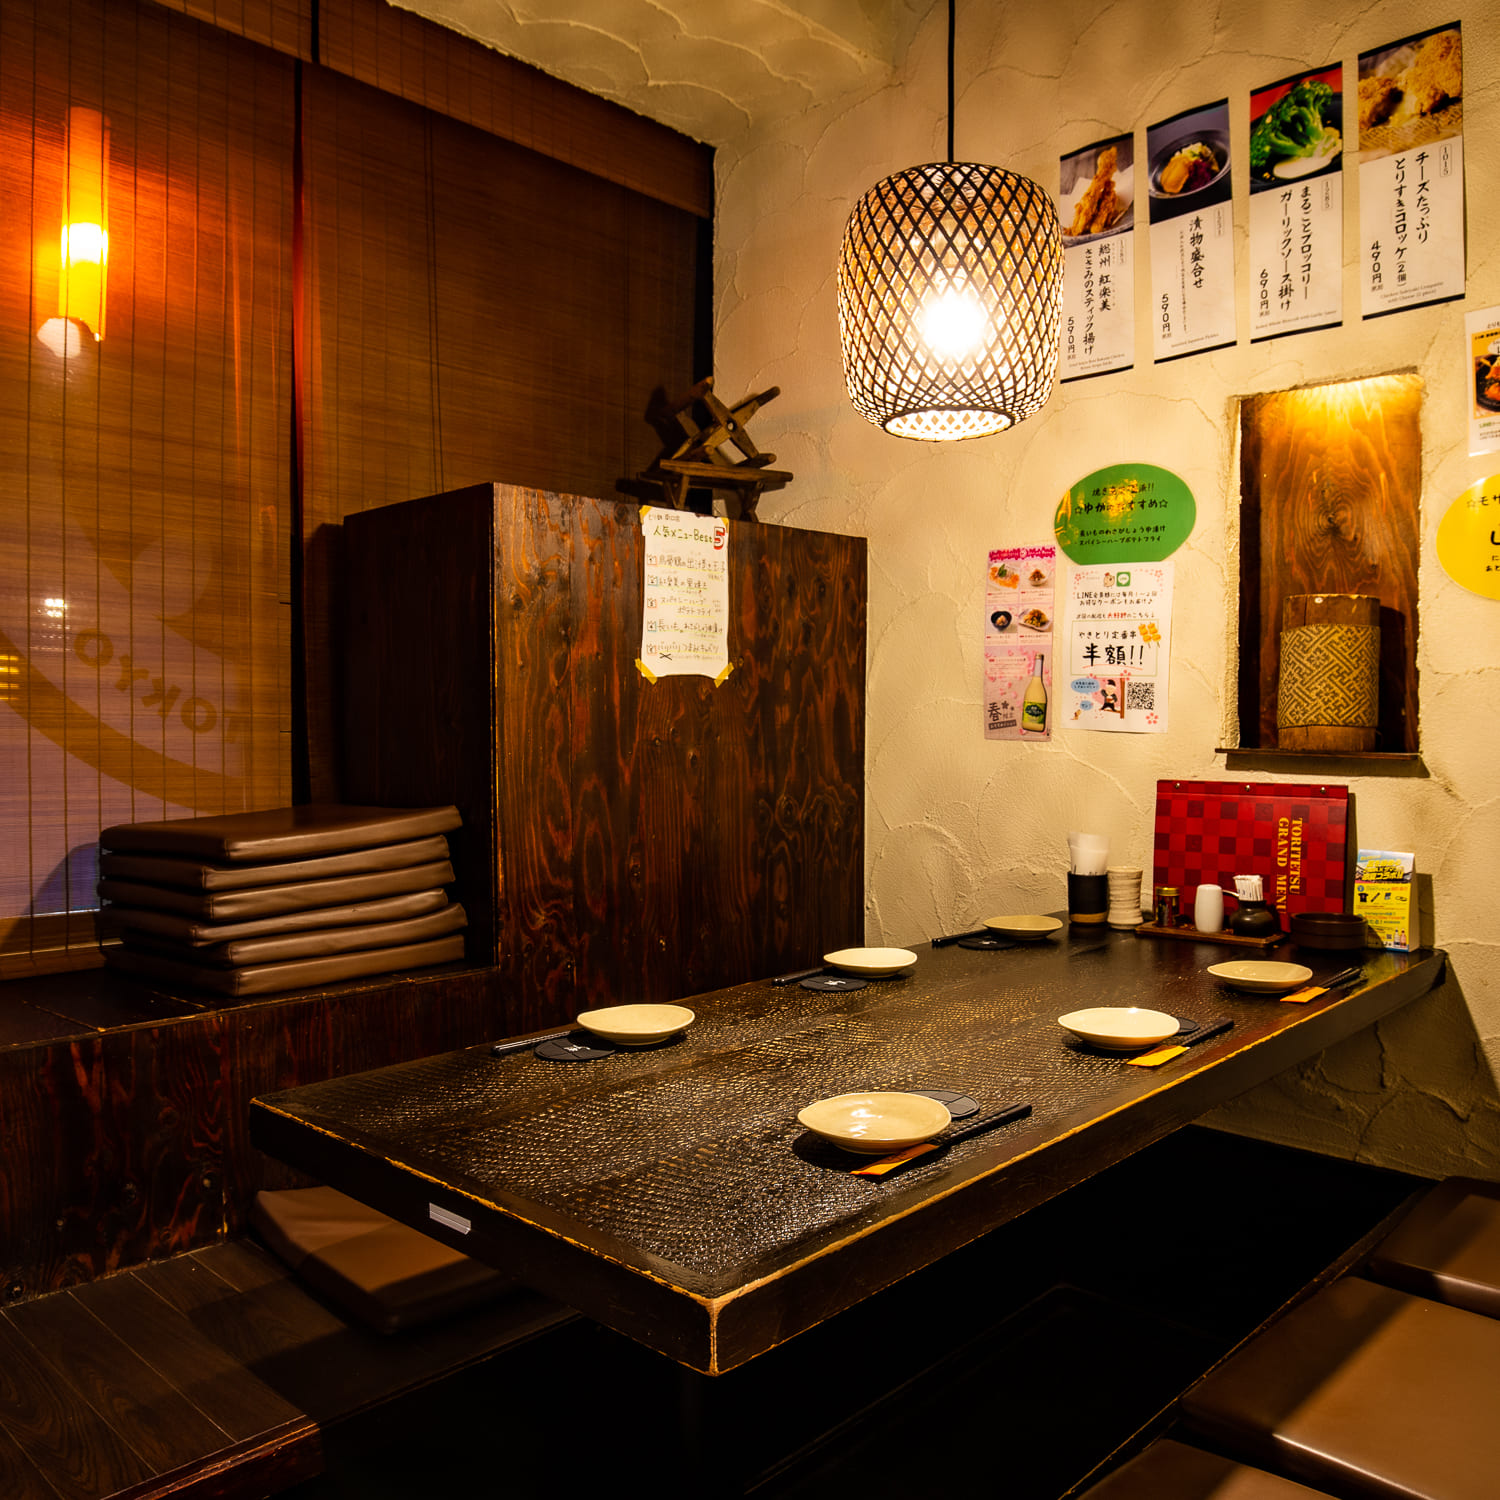 とり鉄 新宿南口店 公式 新宿駅南口近くの居酒屋で味わう美味しい 焼き鳥 と鶏料理